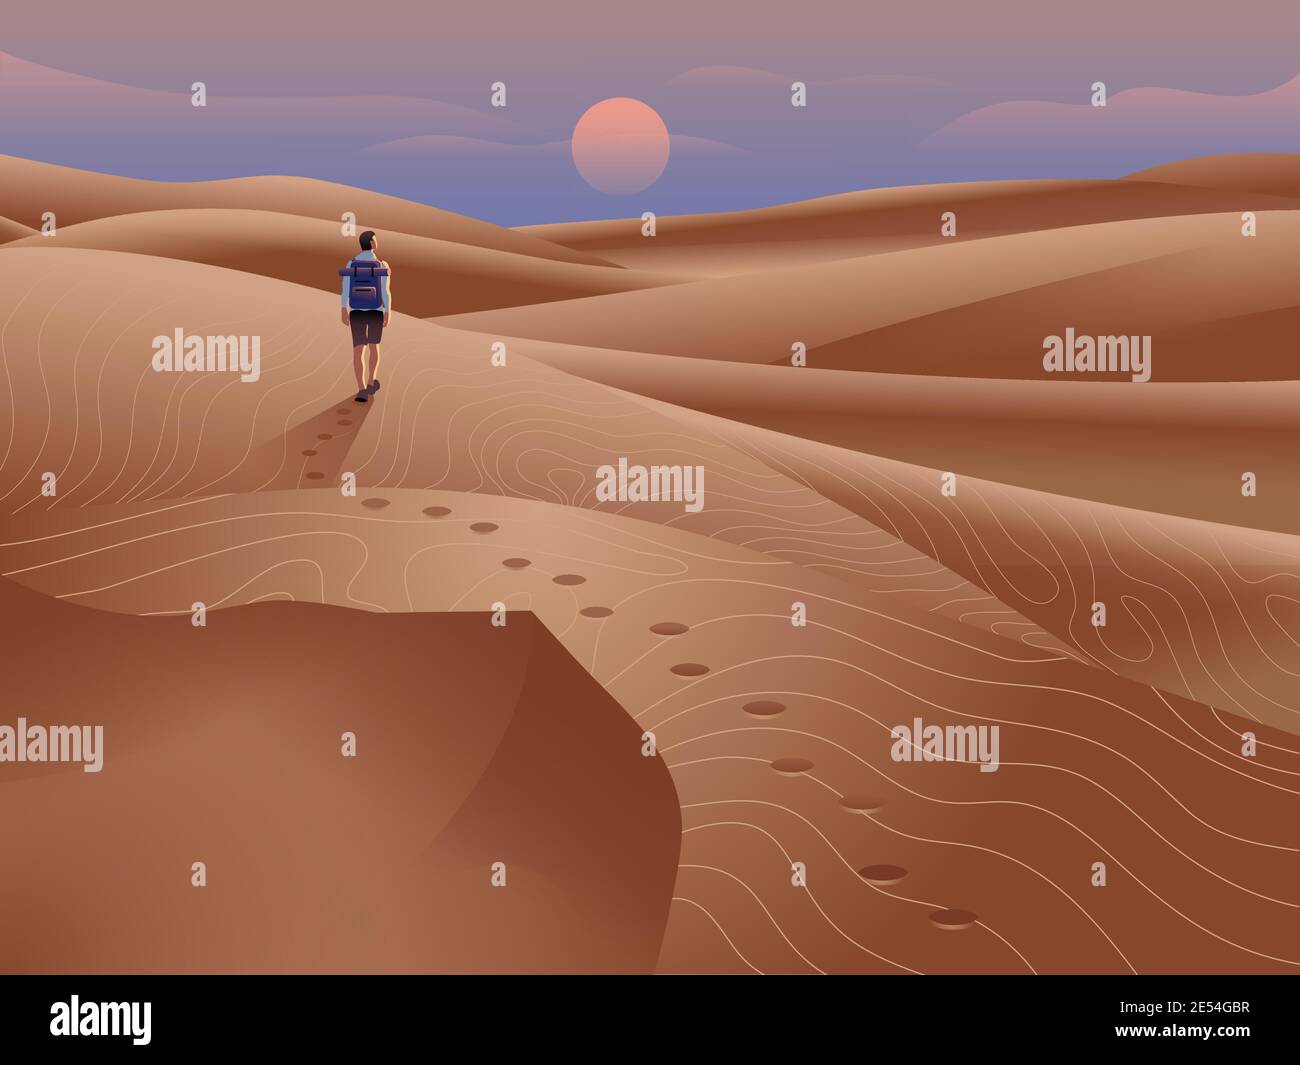 Tourist in der Wüste Illustration. Sanddünen-Landschaft mit Abendhimmel und Sonne am Horizont. Mann, der alleine mit einem Rucksack reist. Stock Vektor